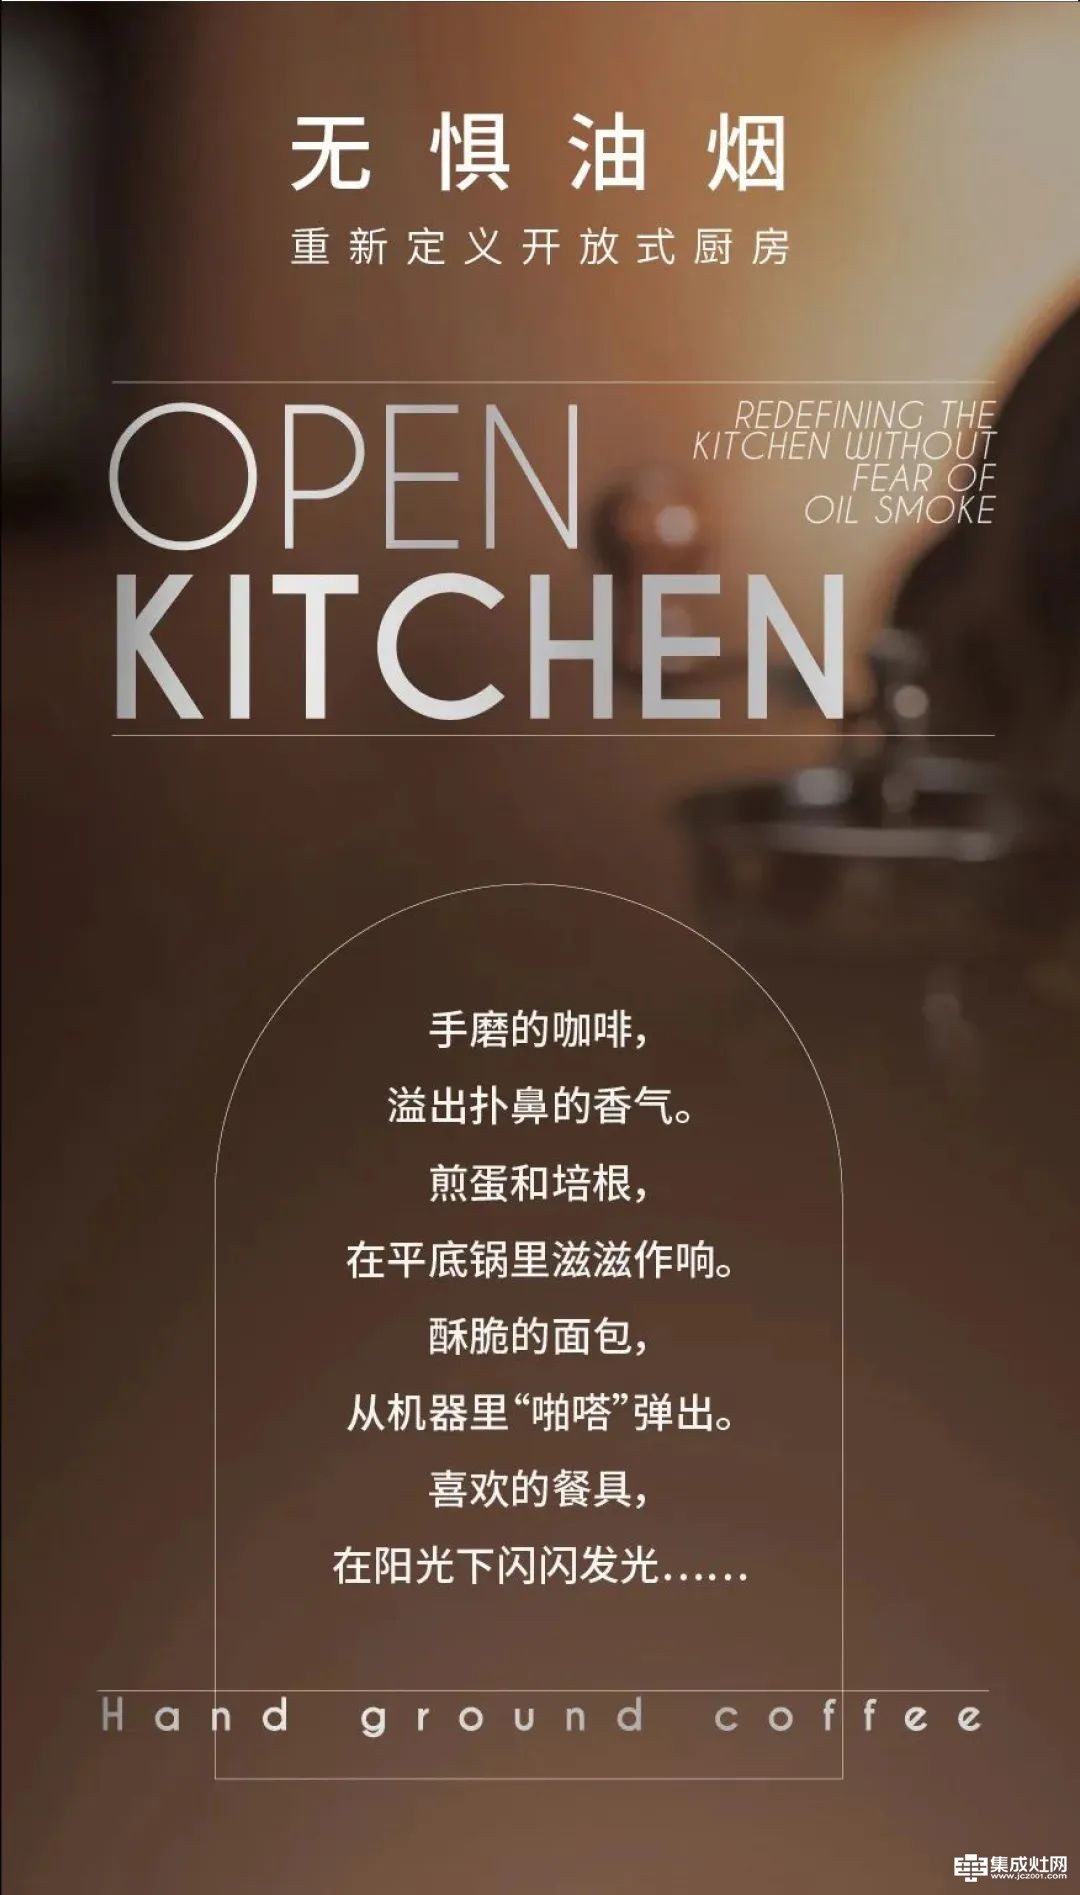 浙派 以集成科技 重新定义开放式厨房